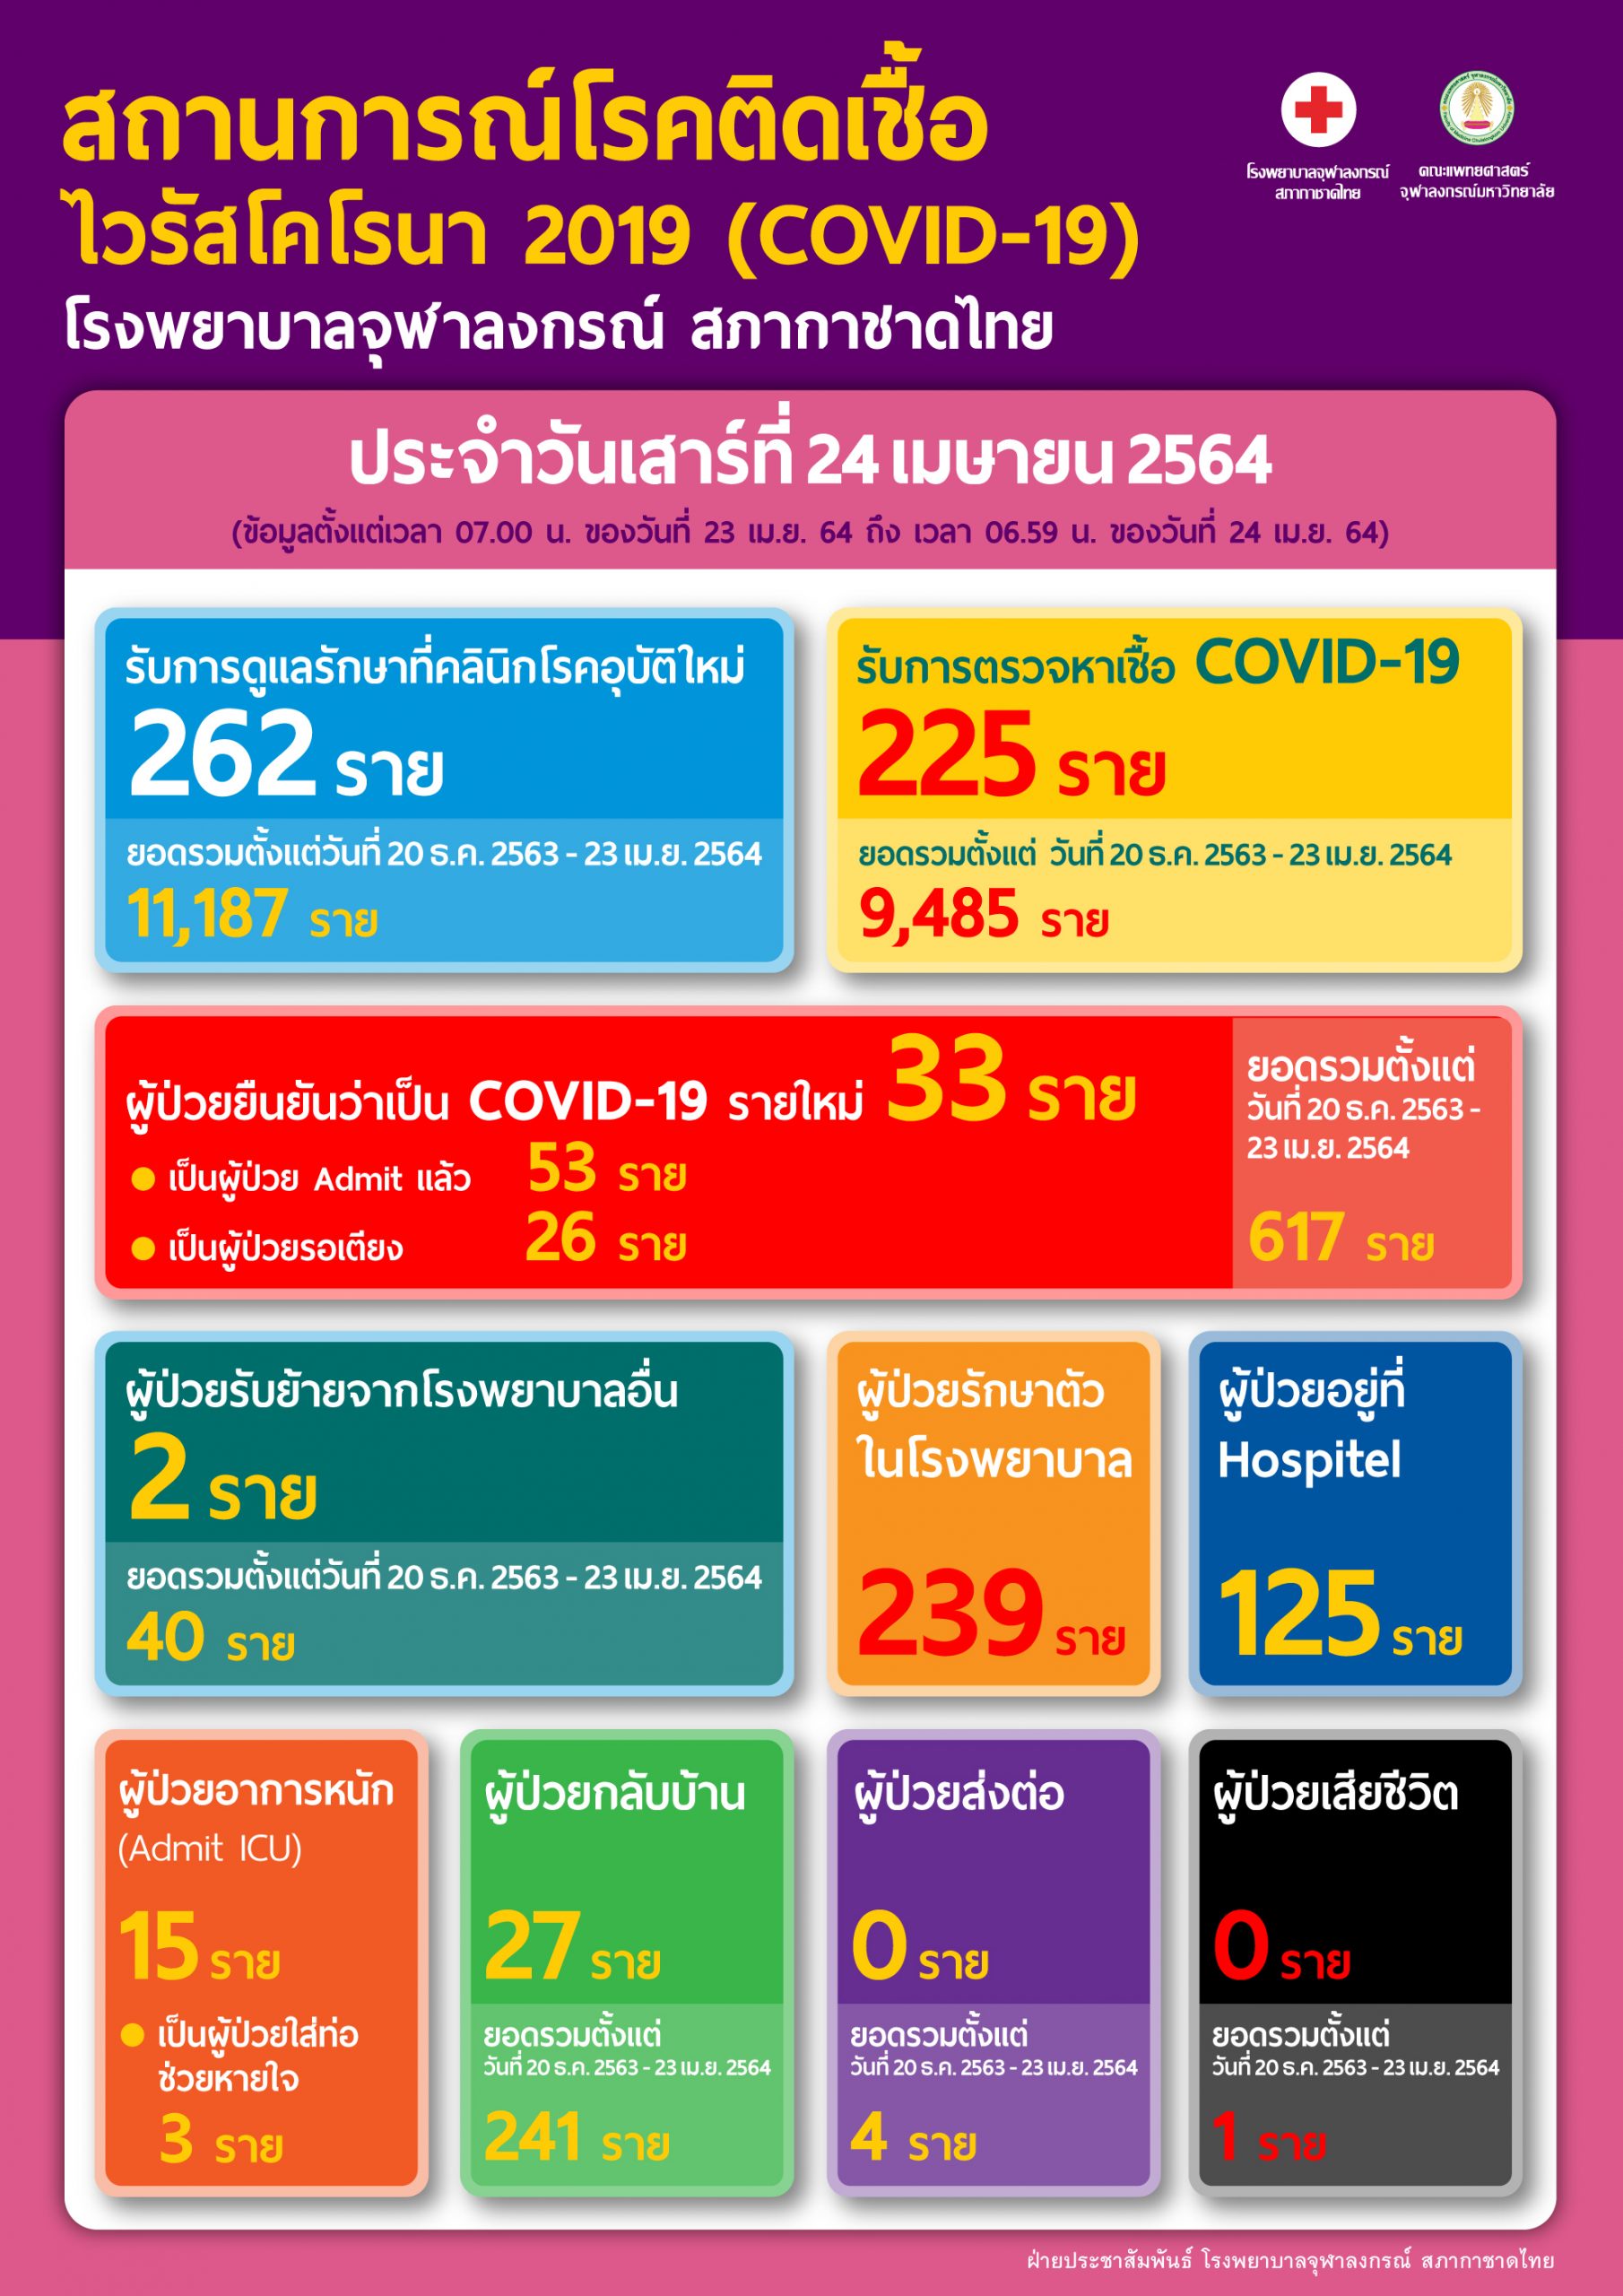 สถานการณ์โรคติดเชื้อ ไวรัสโคโรนา 2019 (COVID-19) โรงพยาบาลจุฬาลงกรณ์ สภากาชาดไทย ประจำวันเสาร์ที่ 24 เมษายน 2564